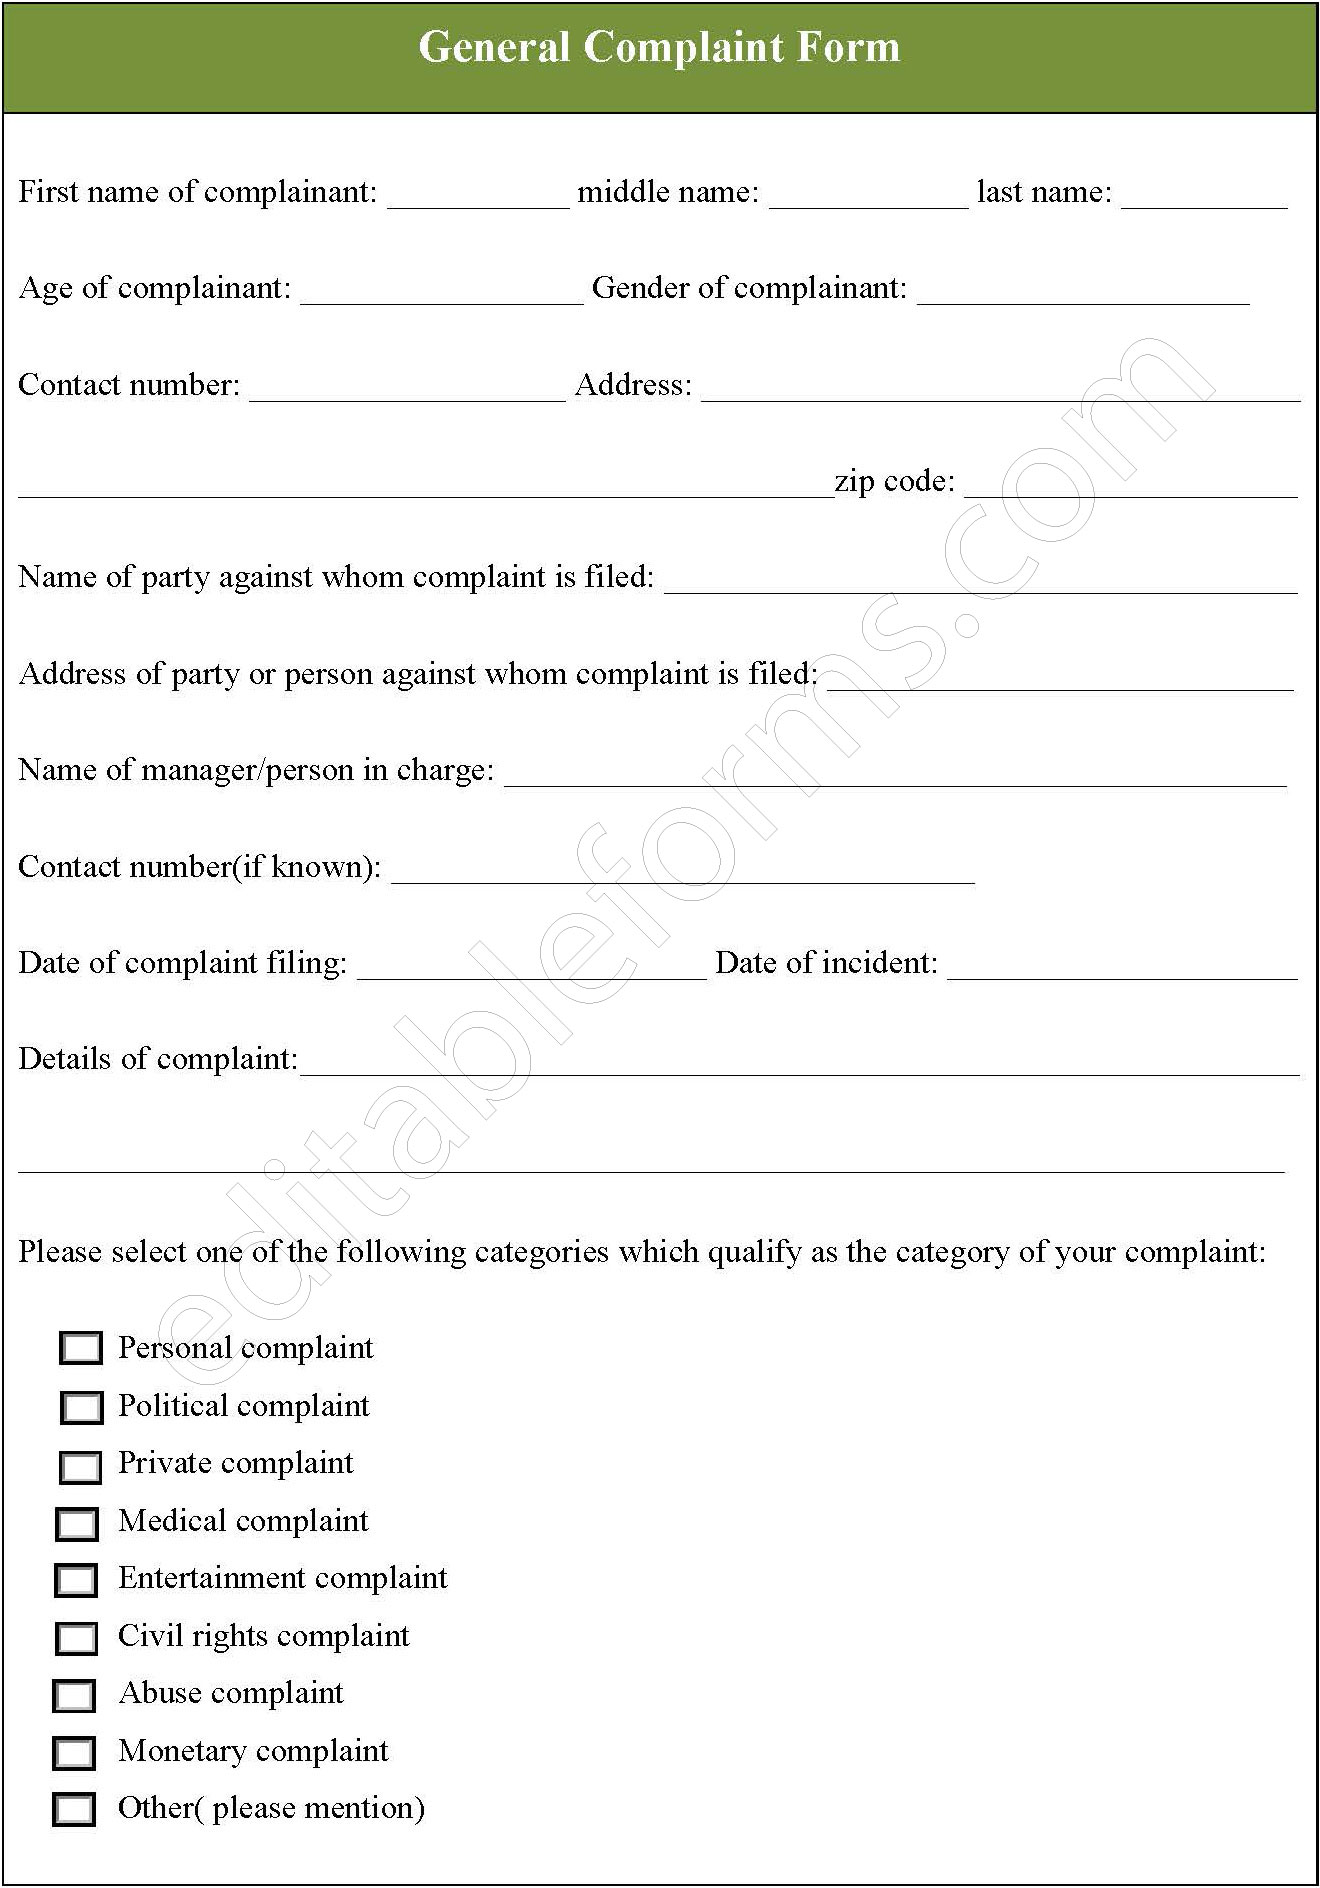 General Complaint Form